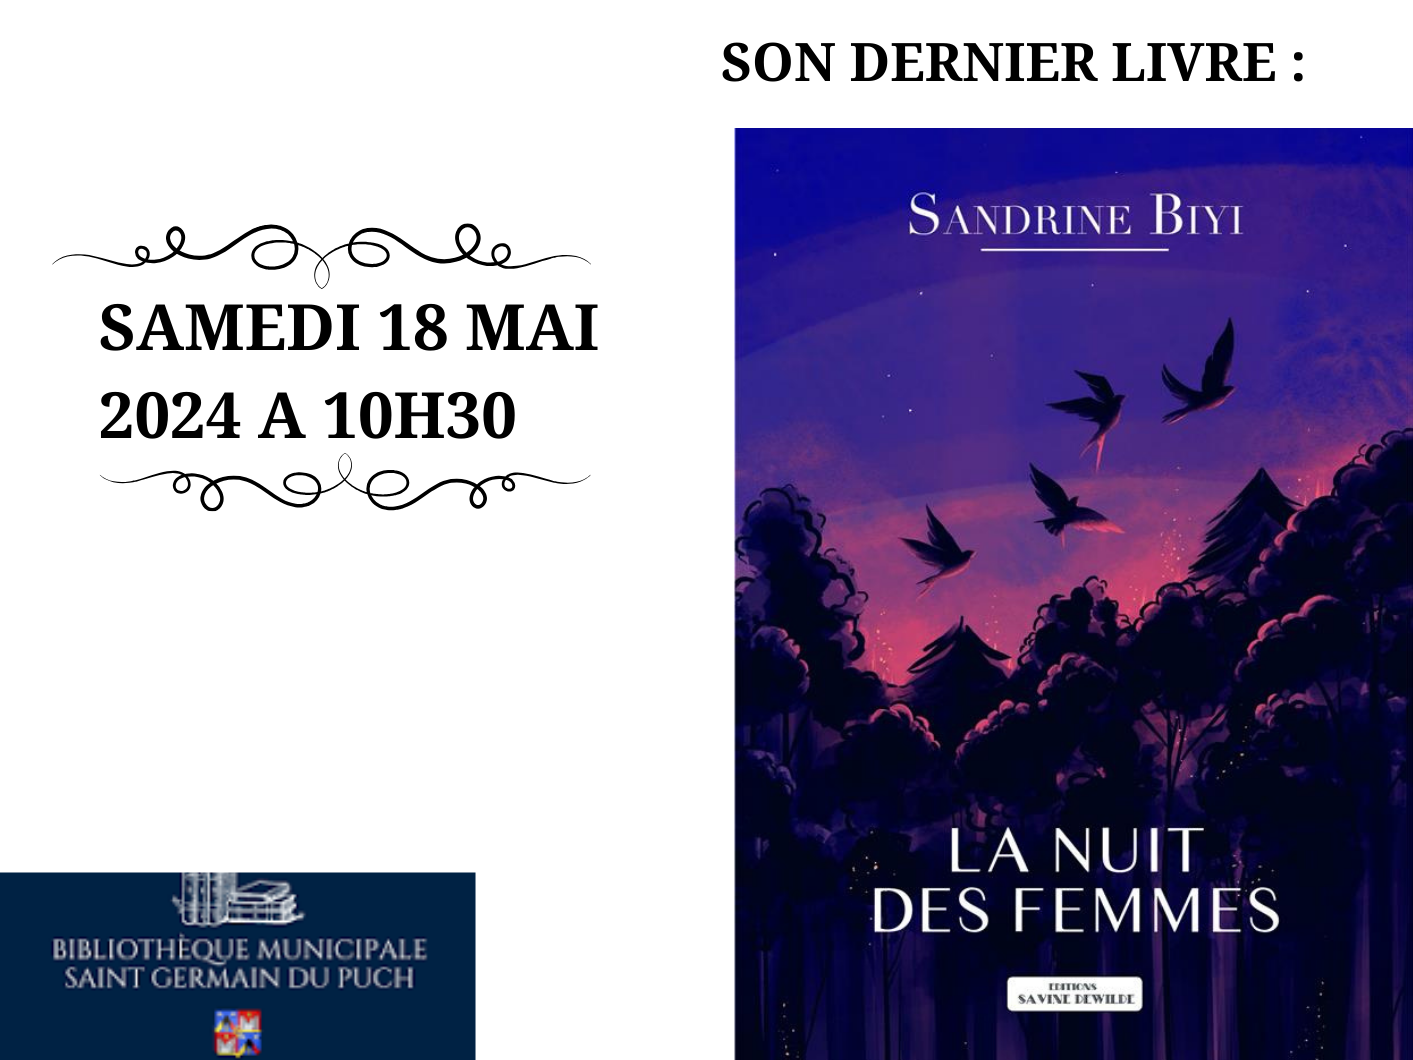 Sandrine Biyi viendra nous parler de son dernier livre "La nuit des femmes" 